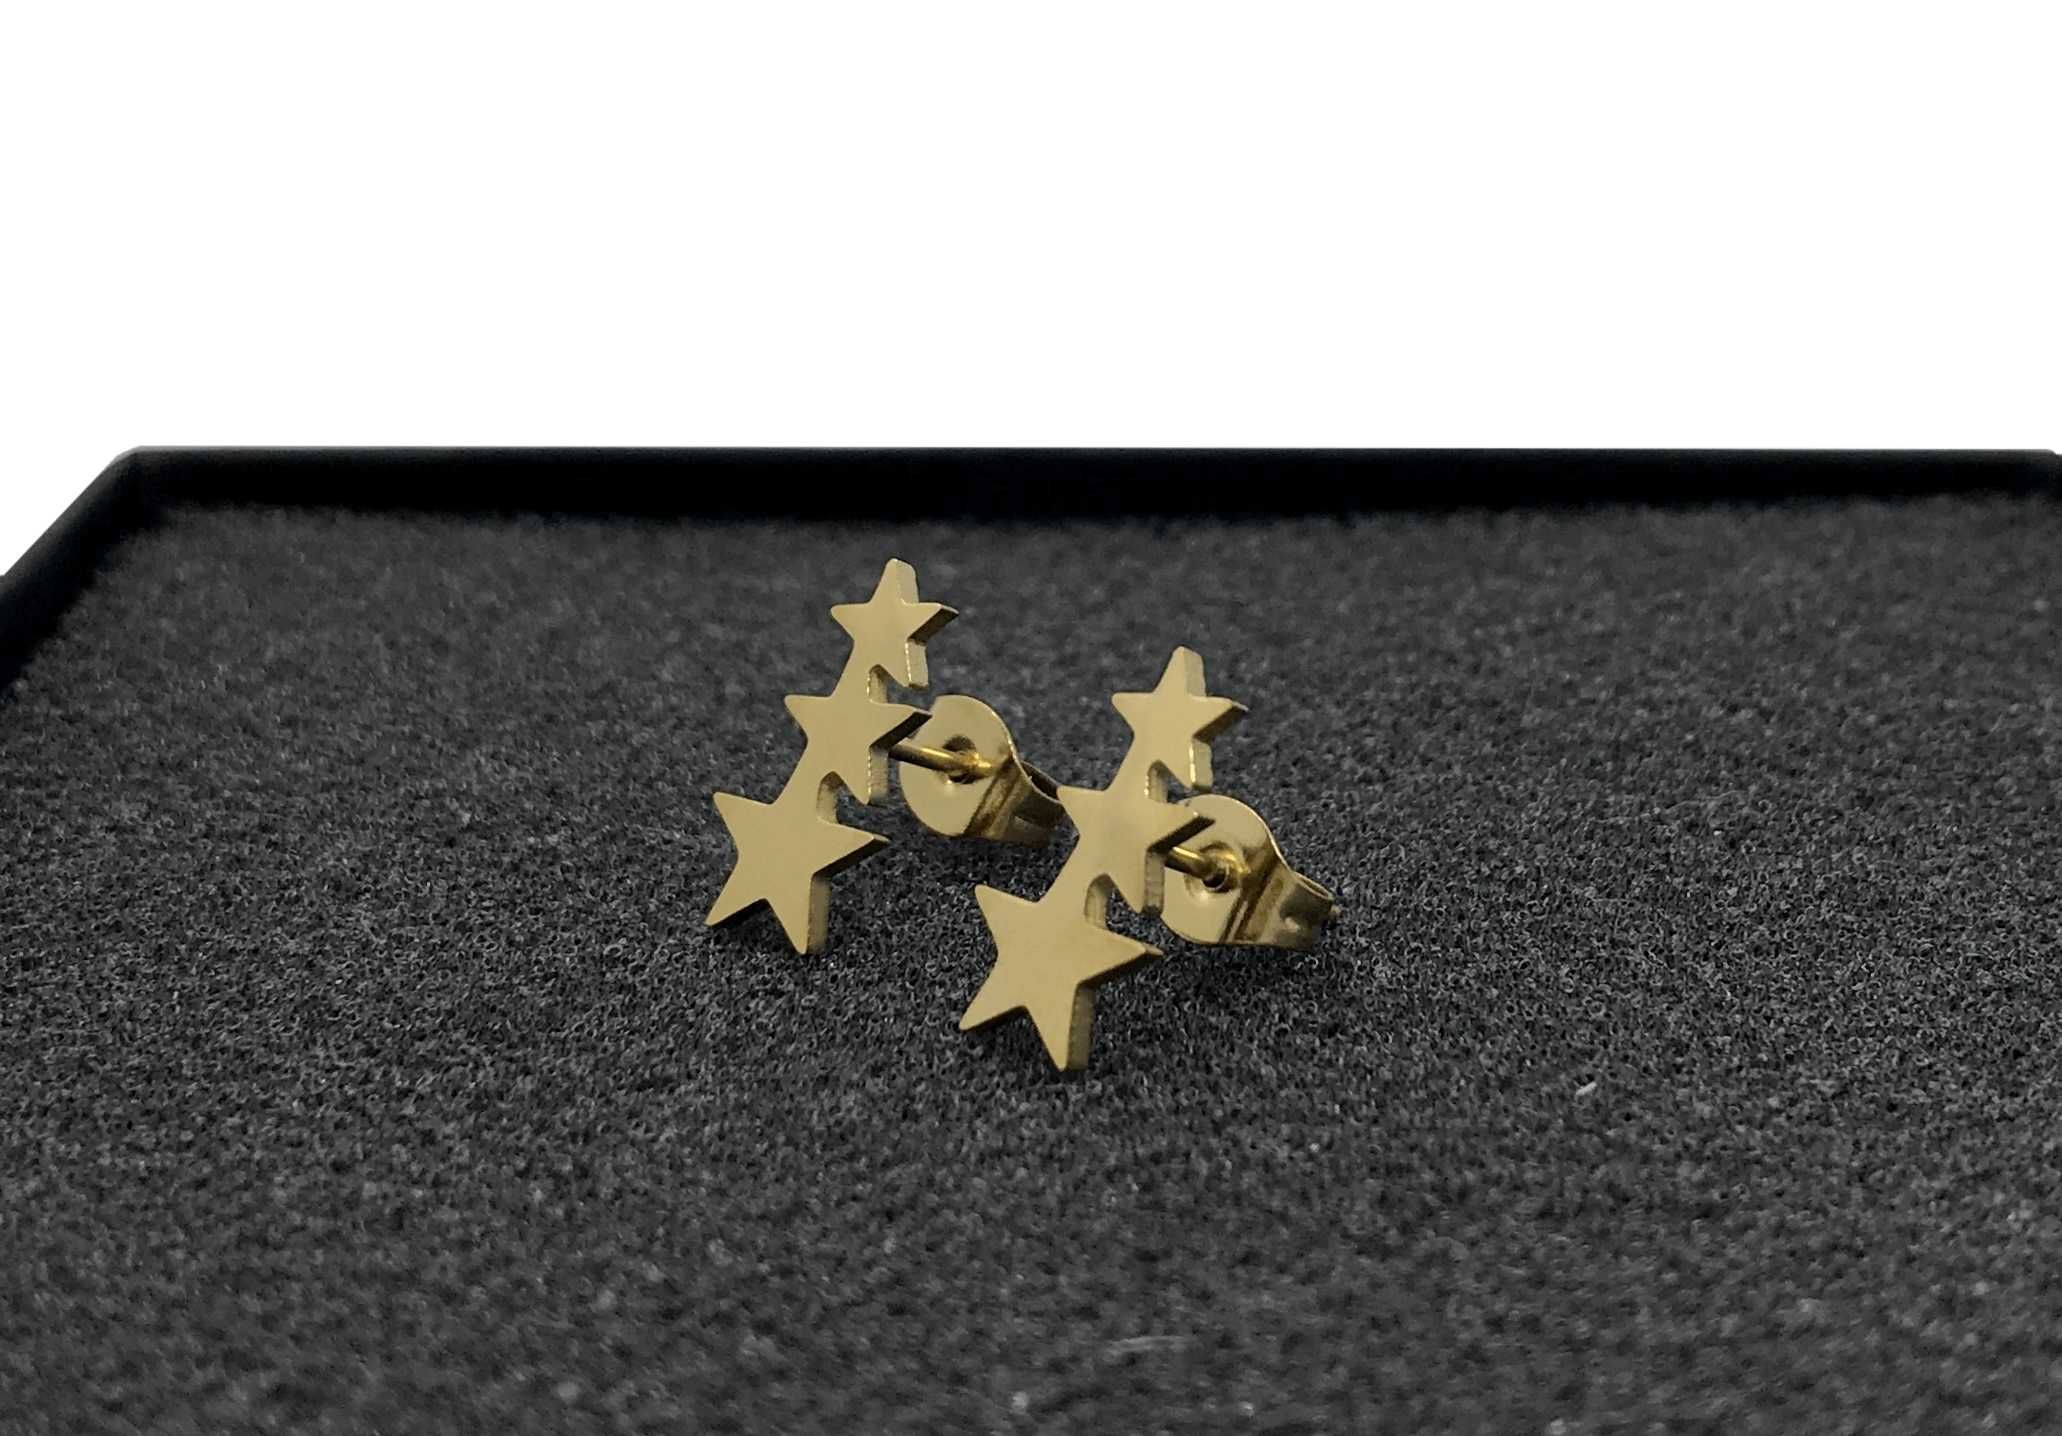 Kolczyki złote 3 gwiazdki wkrętki 1,3cm stal chirurgiczna